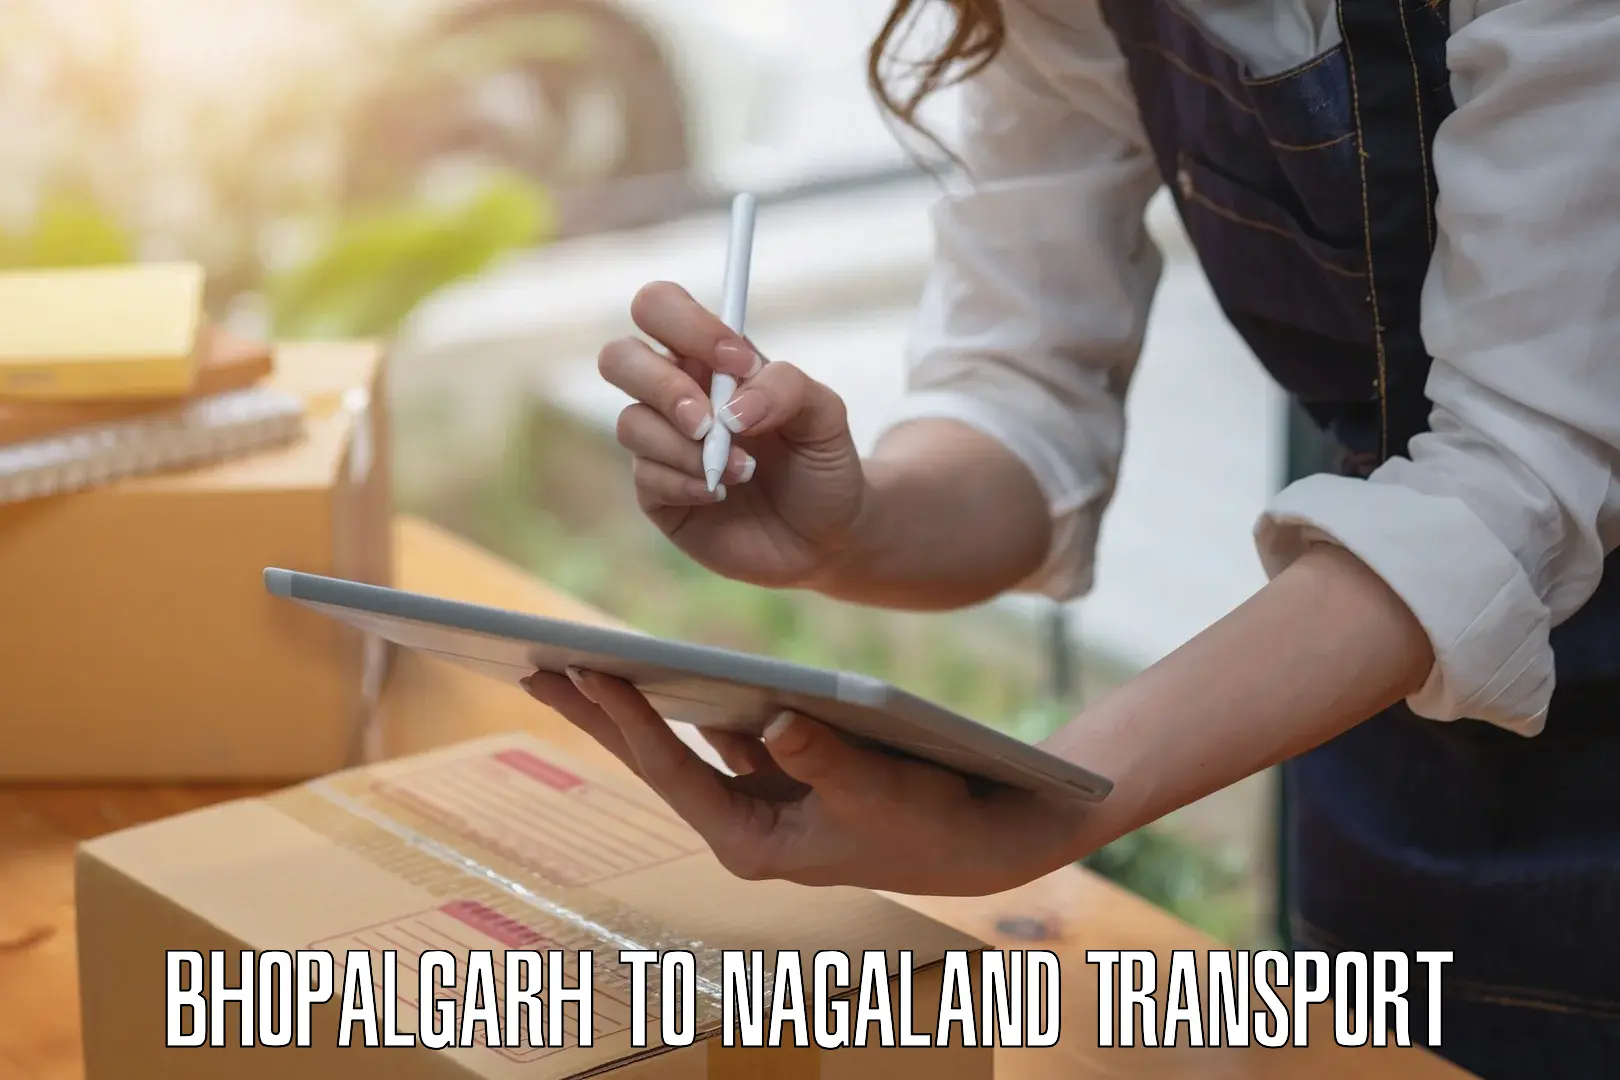 Nationwide transport services Bhopalgarh to Wokha